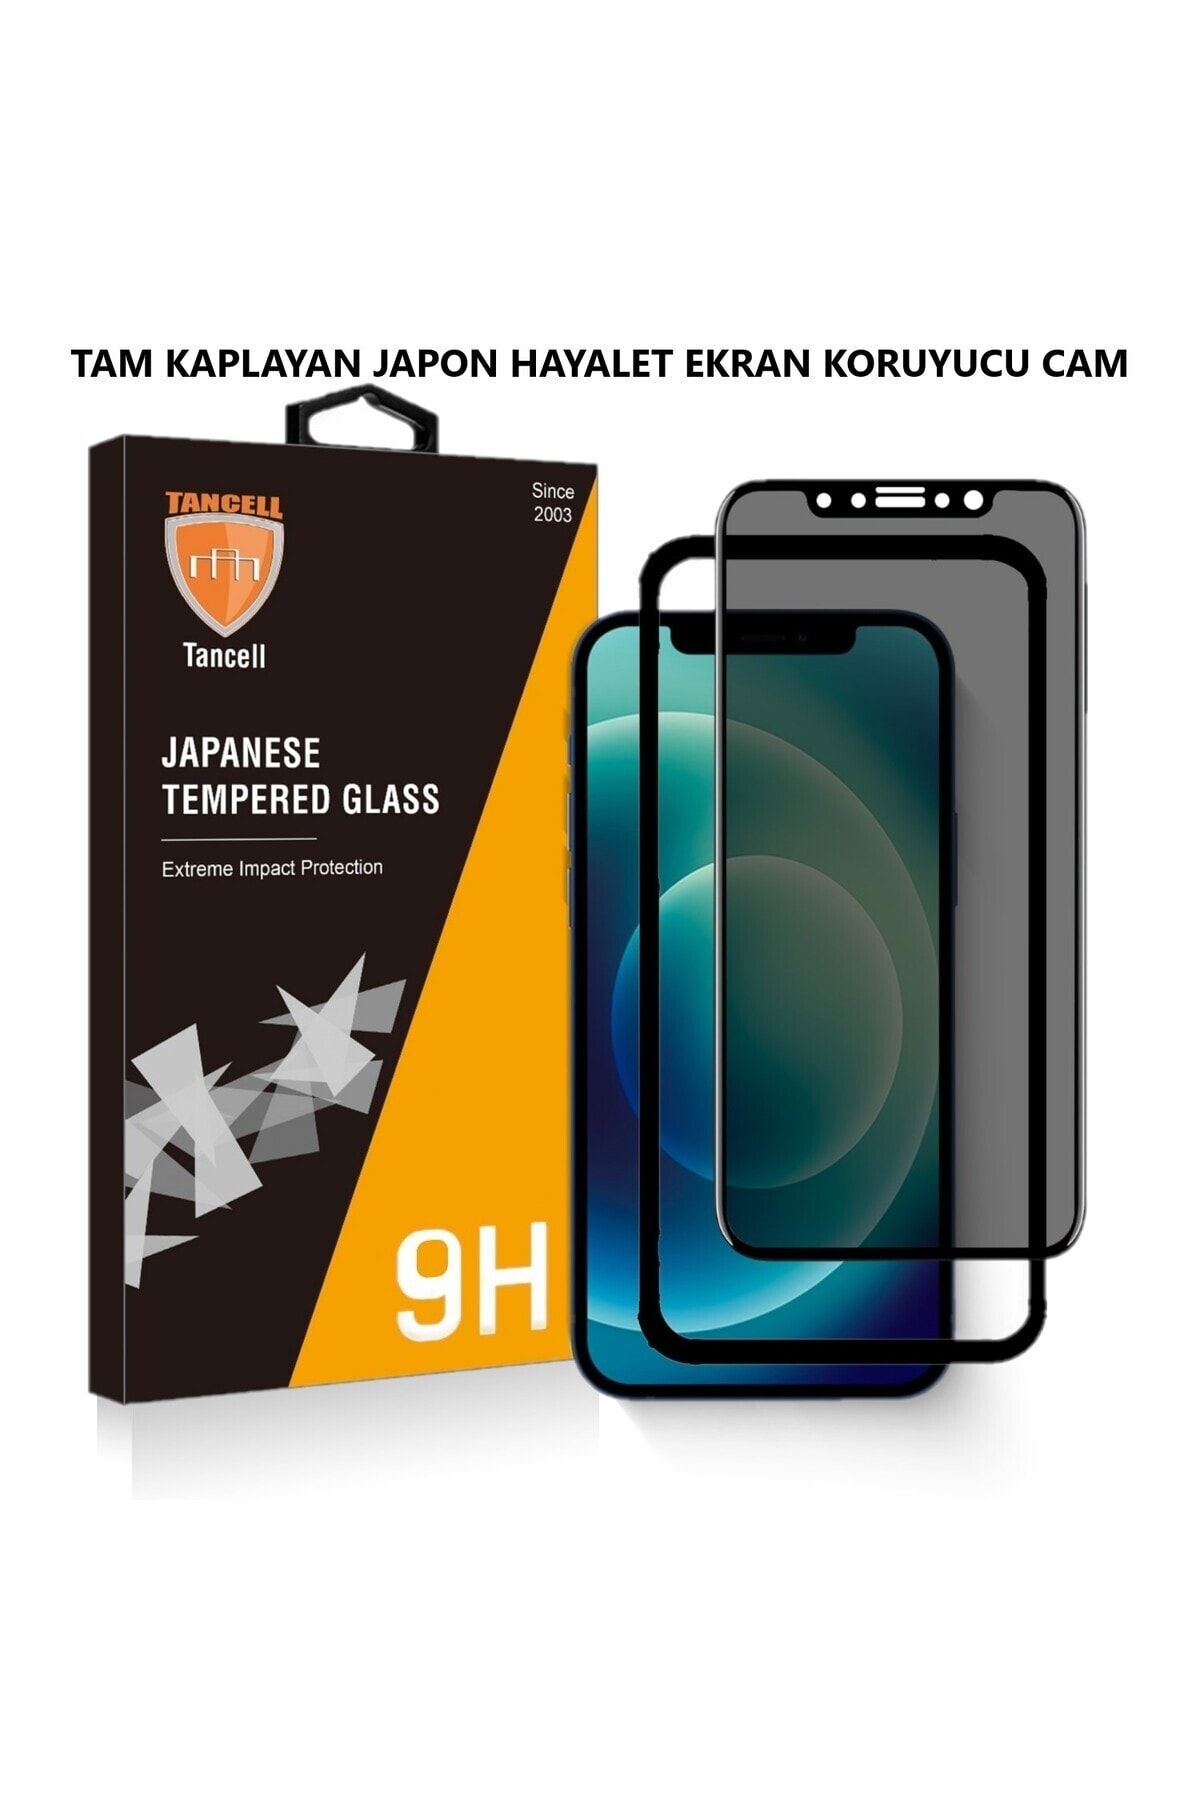 TANCELL İphone 13 Pro Max Uyumlu Hayalet Ekran Koruyucu Tam Kaplayan Japon Kırılmaz Cam 6,7 Inc (2 ADET)